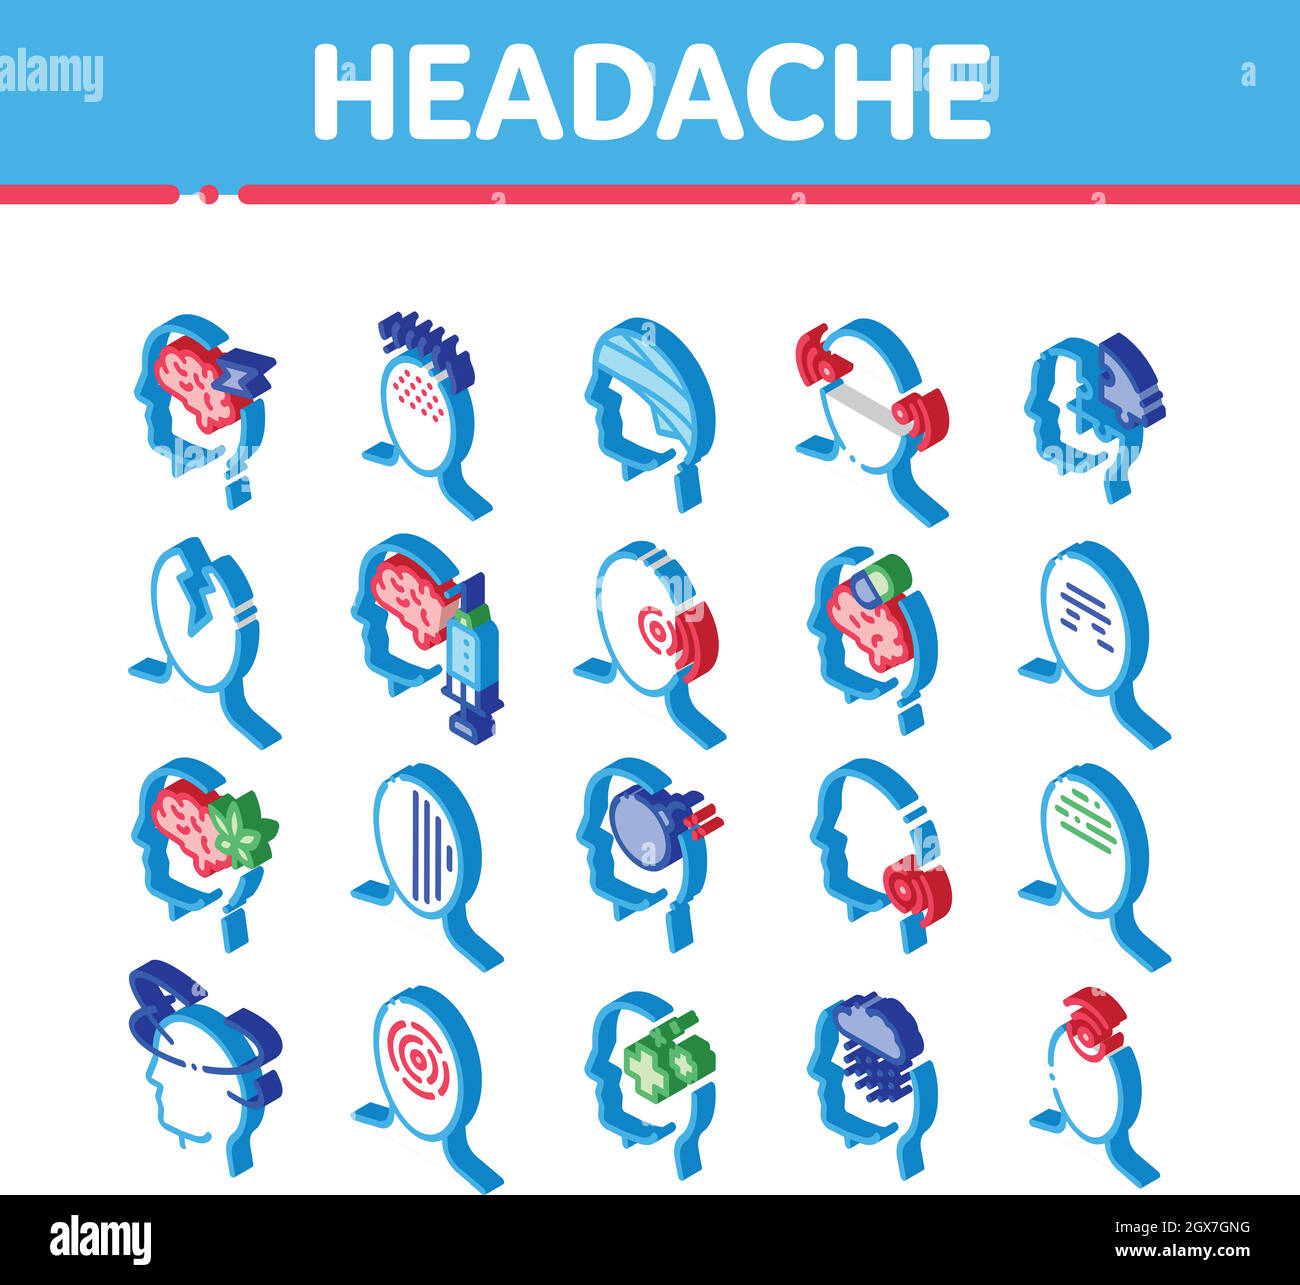 Headache Isometric Icons Set Vector Stock Vector